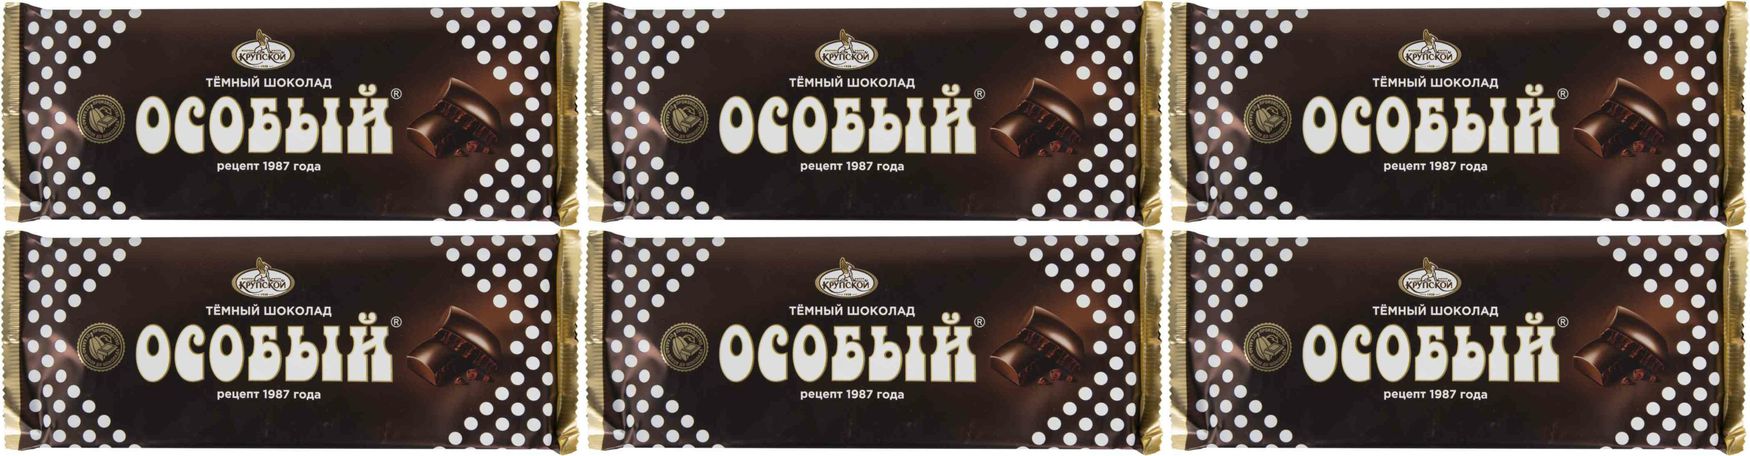 Шоколад особый. Шоколад особый темный 200г. Реклама шоколада особый. Шоколад особый Волжанка.